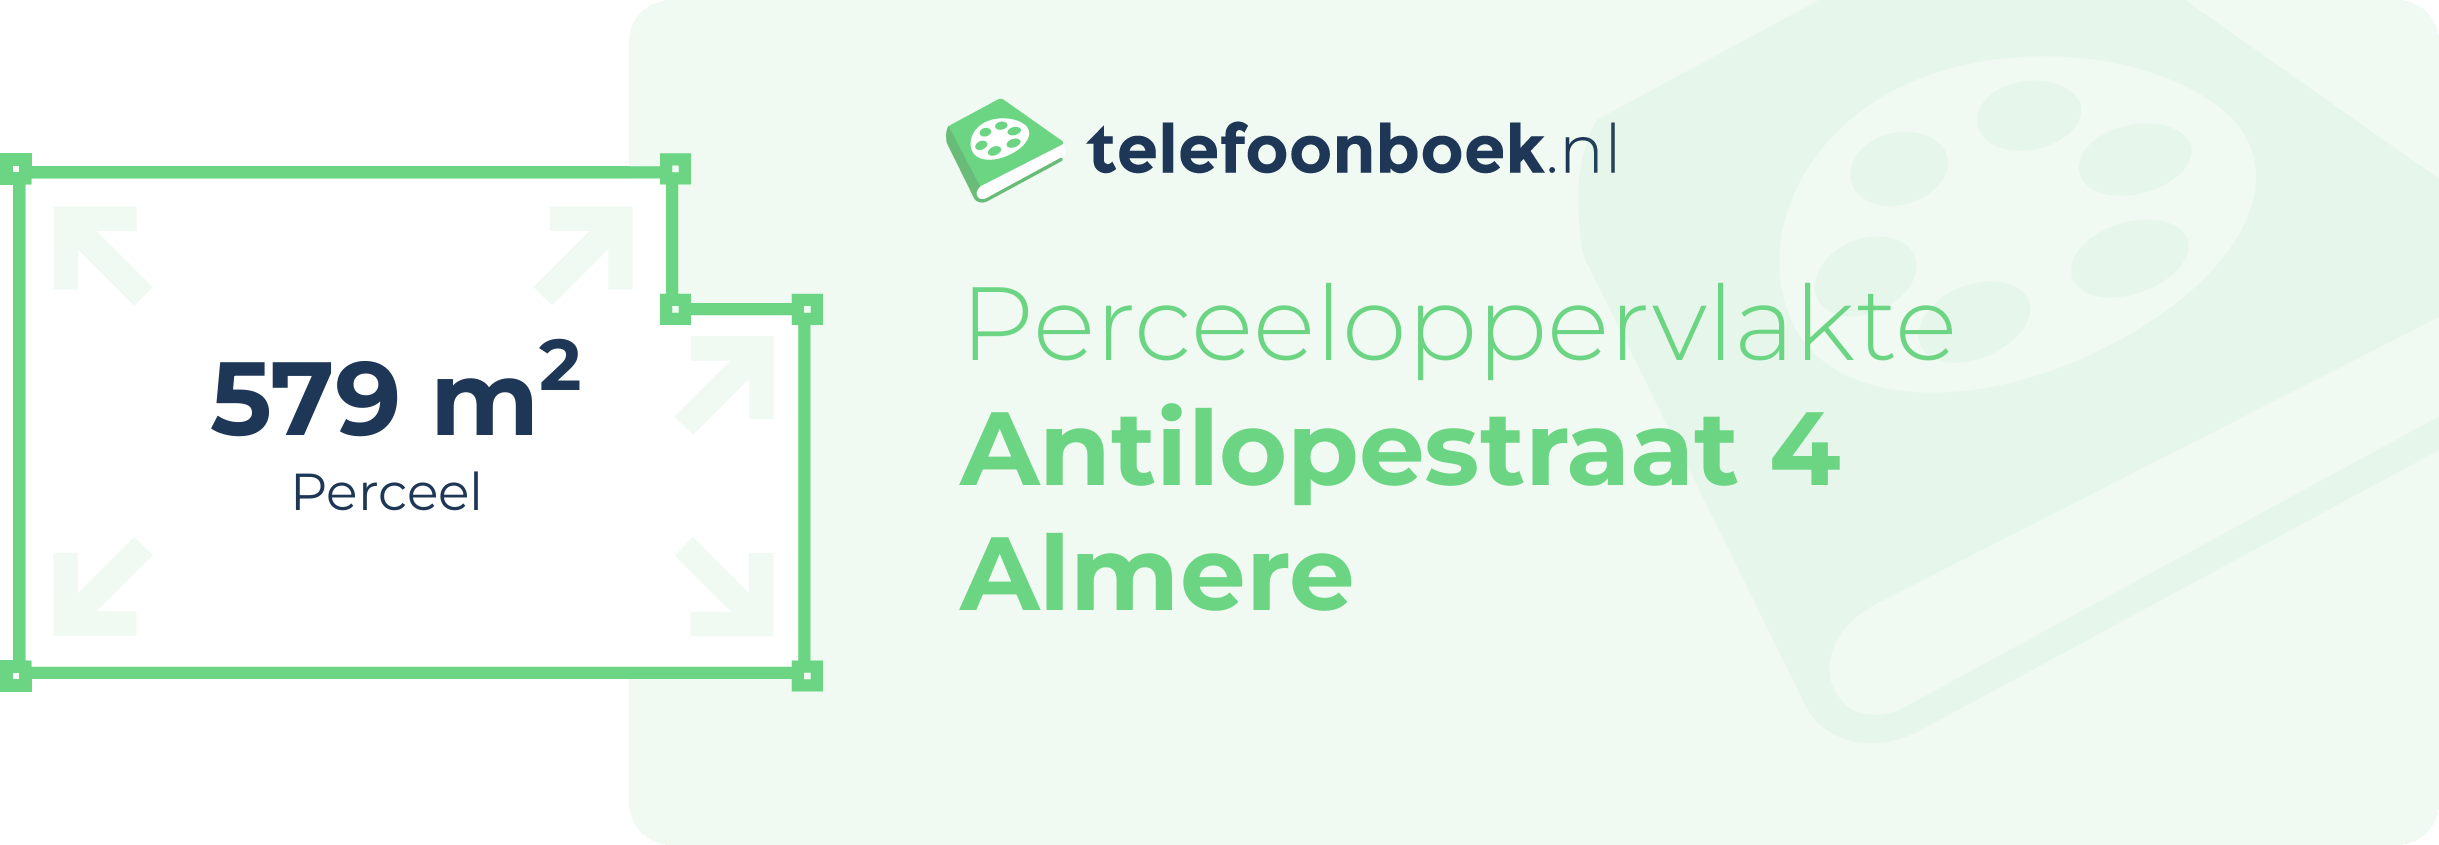 Perceeloppervlakte Antilopestraat 4 Almere